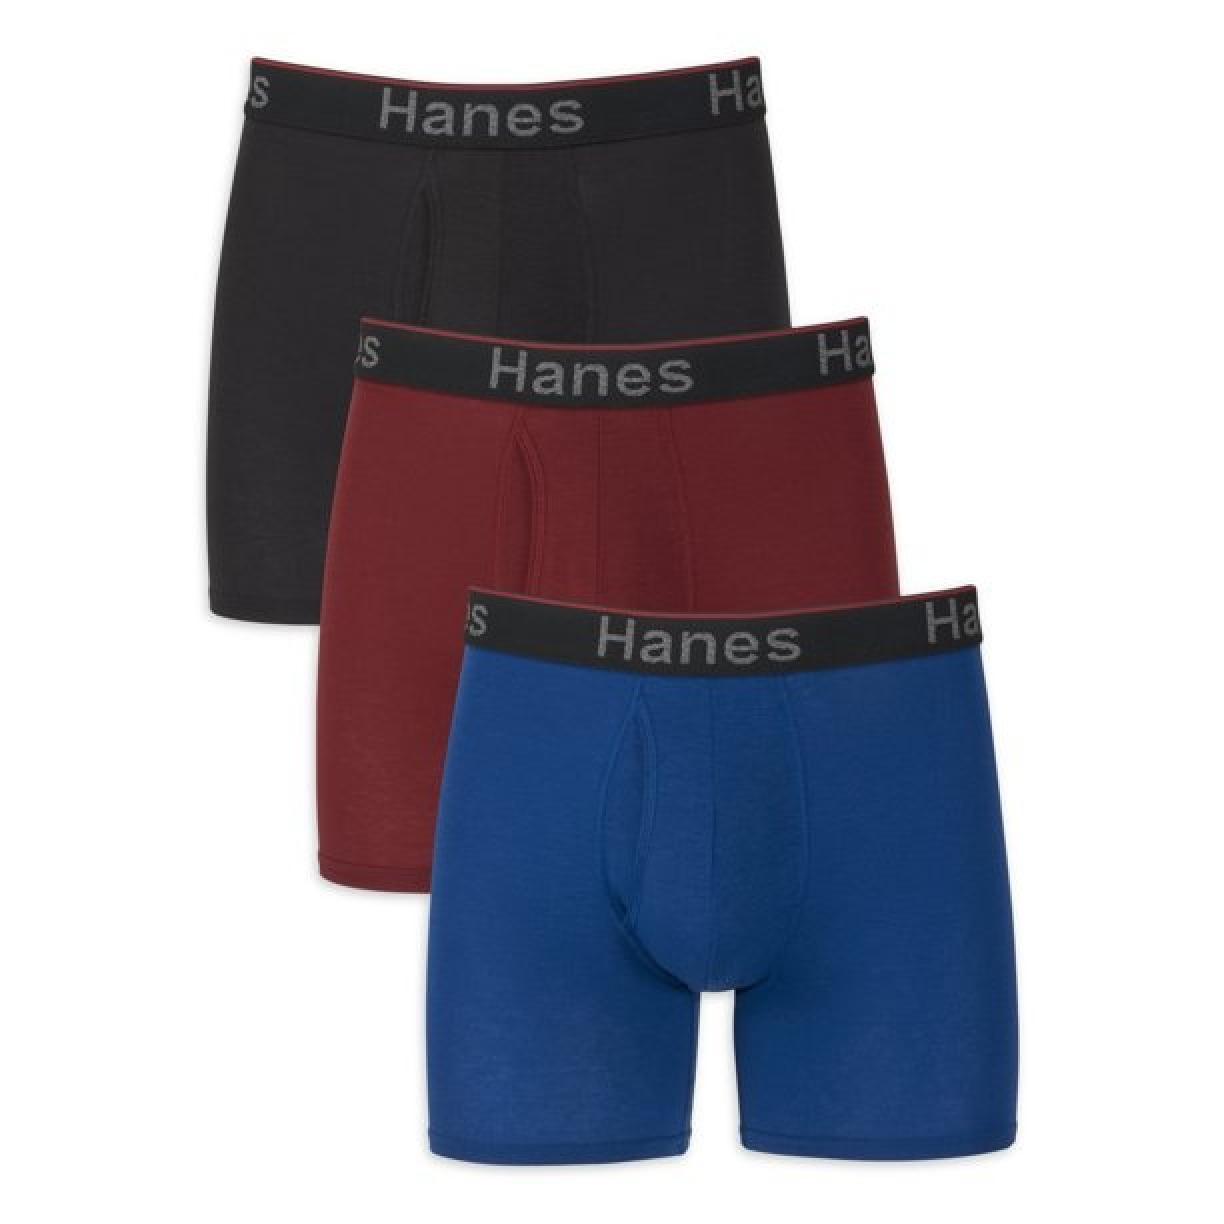 Hanes Men's Comfort Flex Fit Total Support Pouch Boxer Briefs, 3 PK